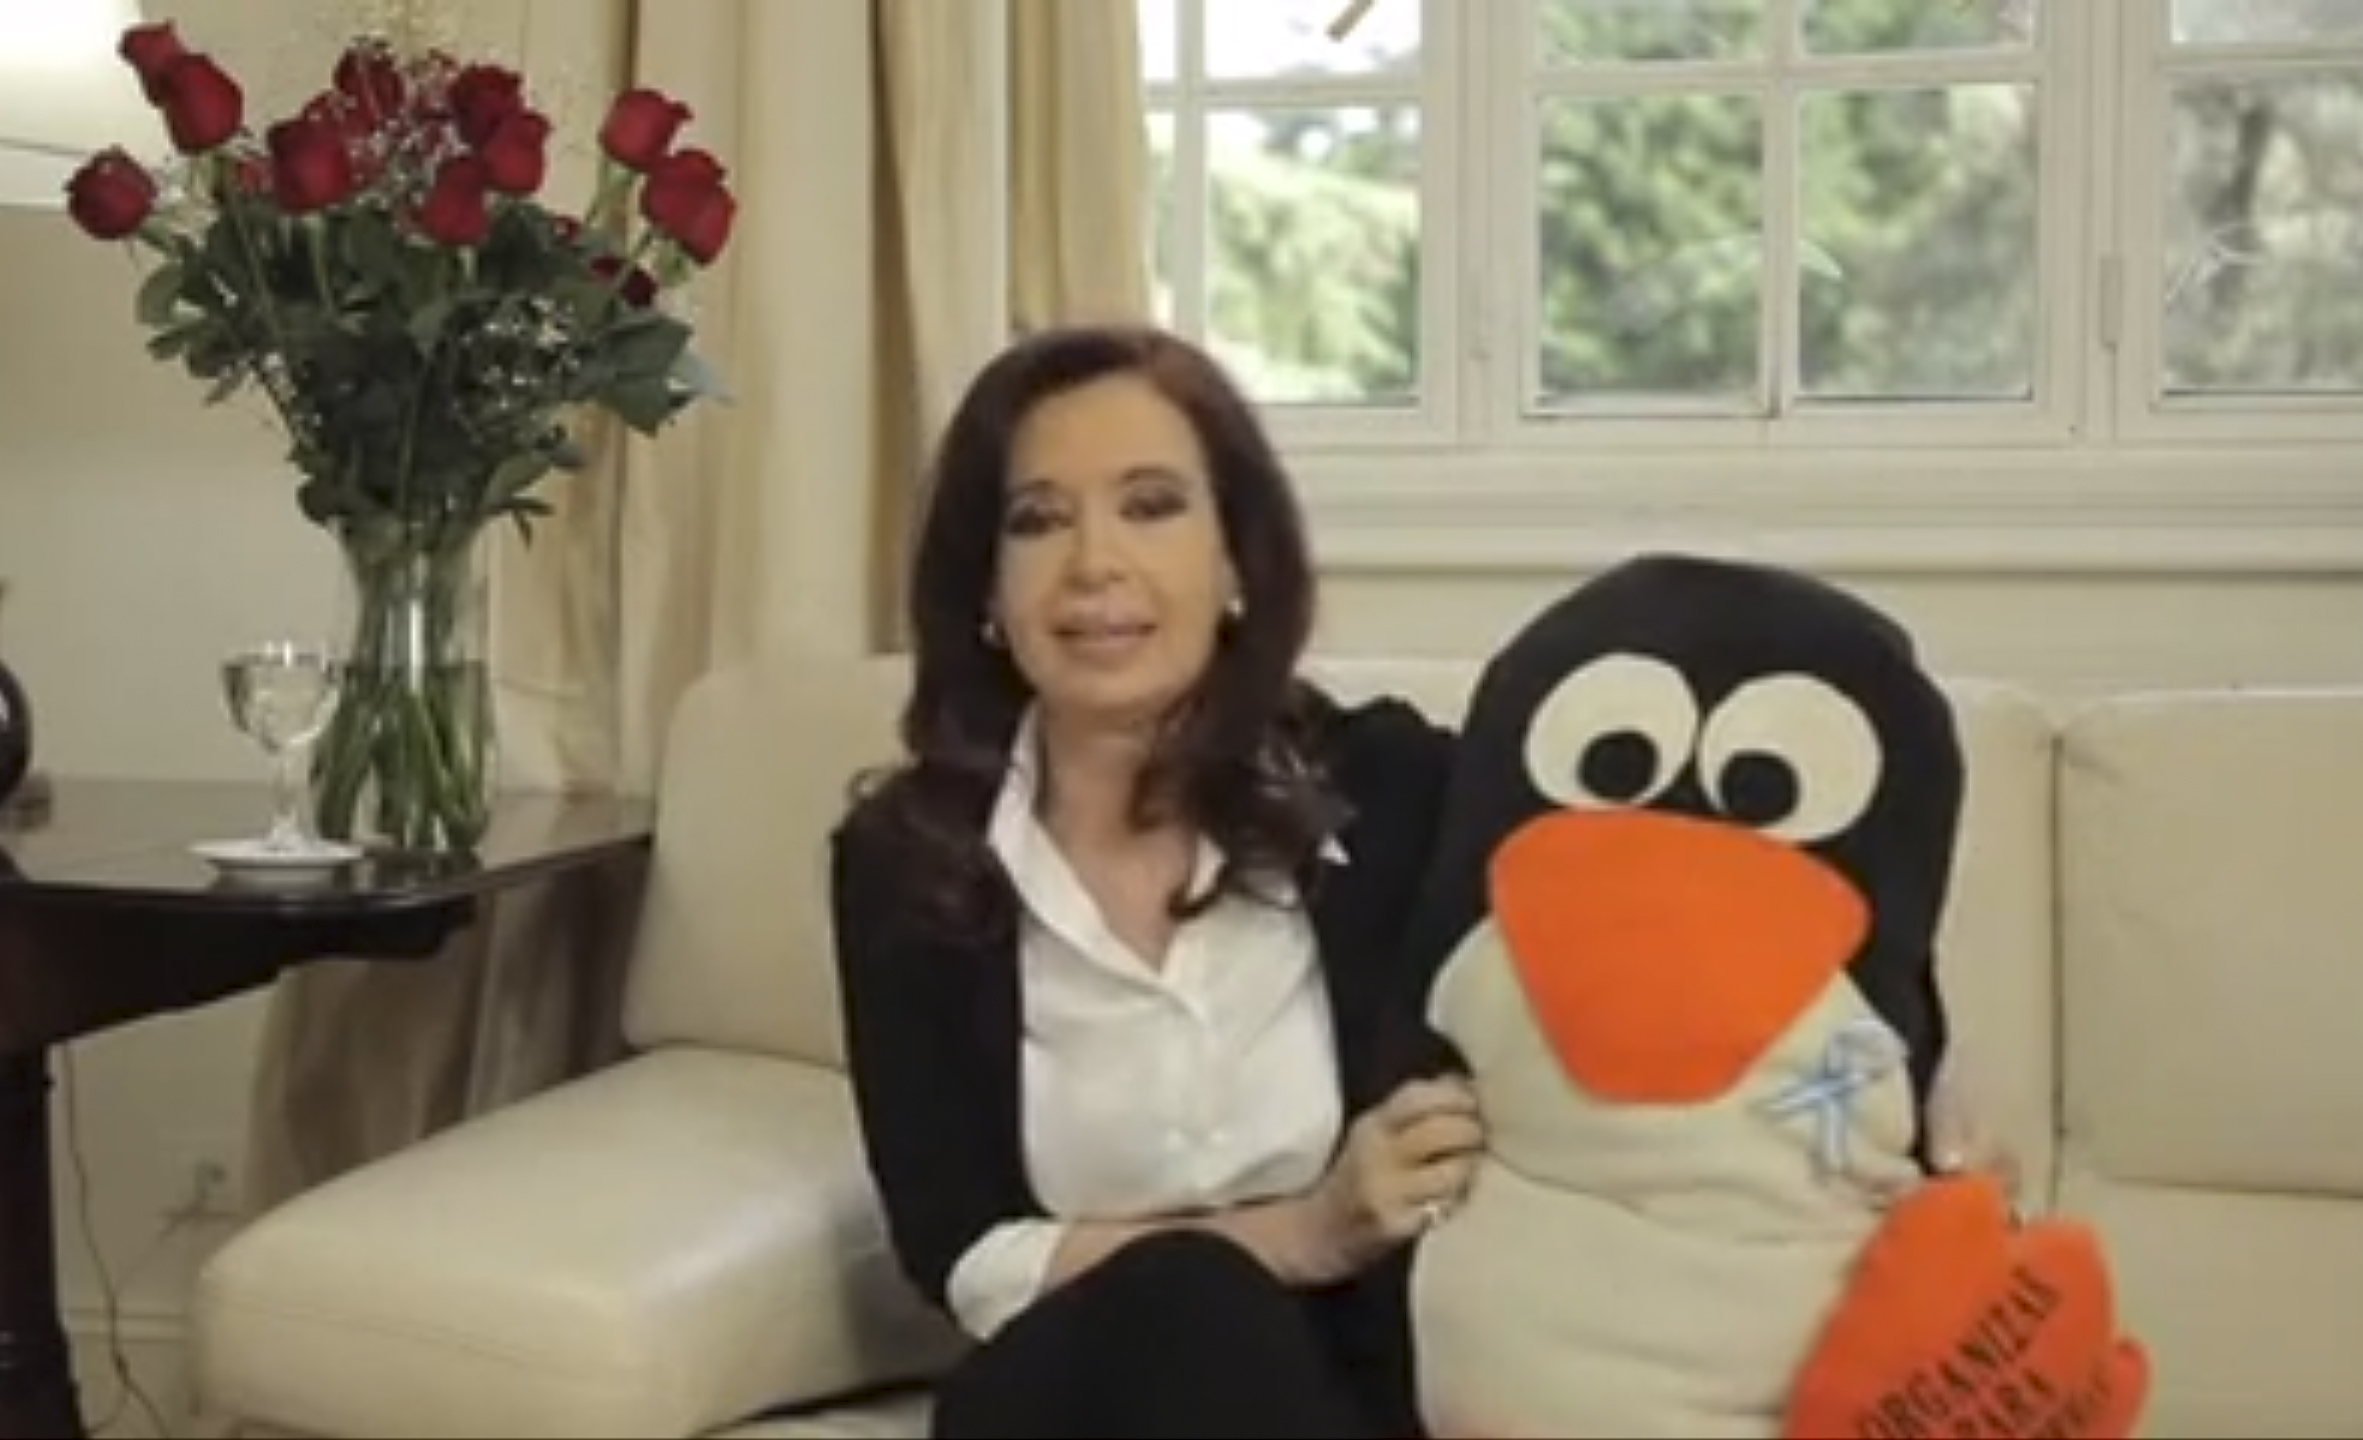 Cristina Fernández reaparece con un pingüino de peluche gigante (Foto)